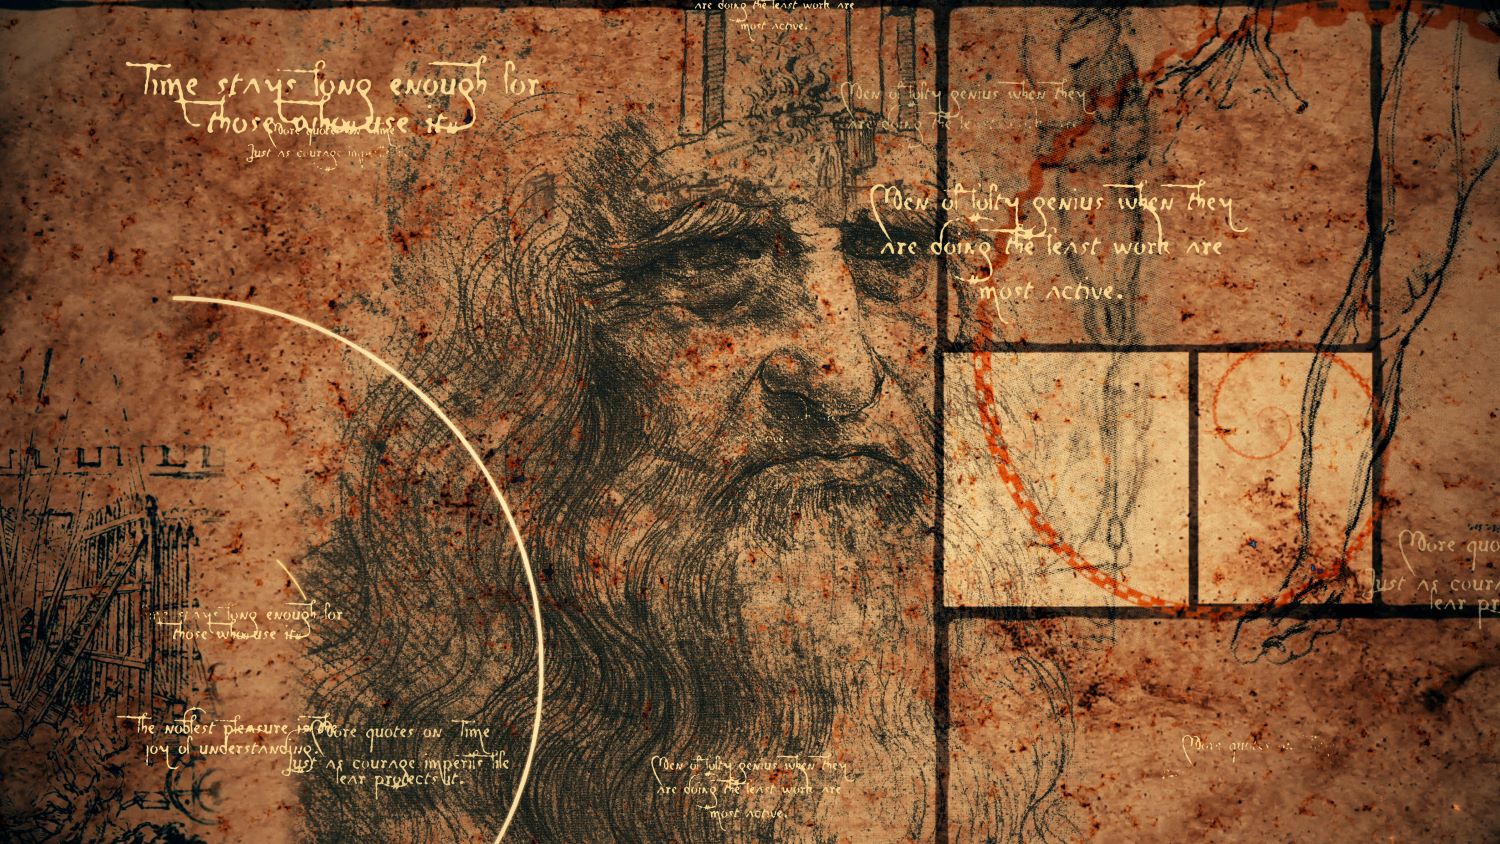 Copertina della news I Medici e Leonardo:<br>serie tv e promozione di un brand culturale